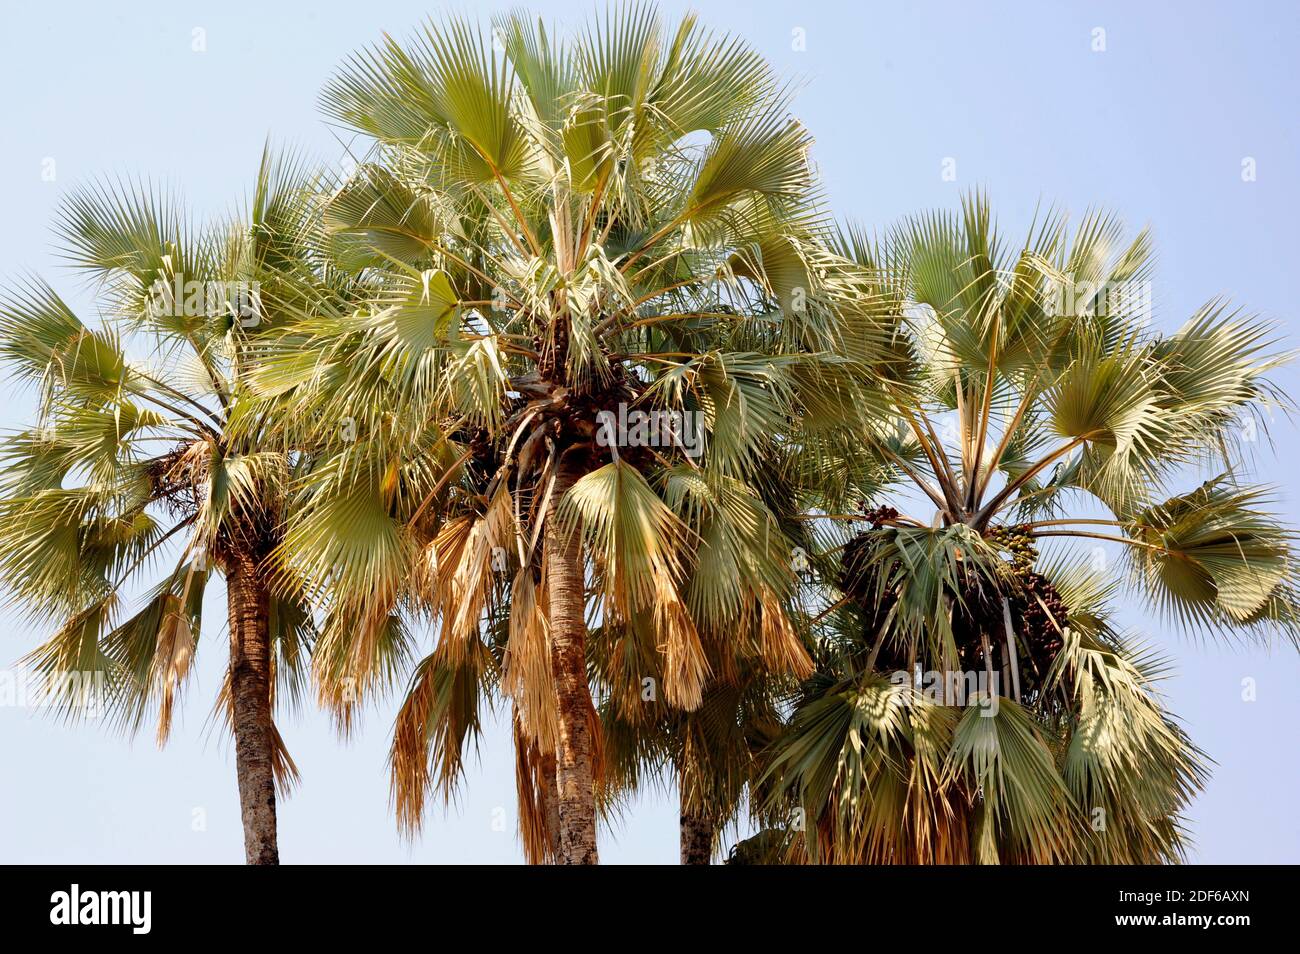 La palmera de abanico real o la palmera de Makalani (Hyphaene petersiana) es una palmera dioica nativa del sur de África central. Angiospermas. Arecaceae. Epupa, Namibia. Foto de stock